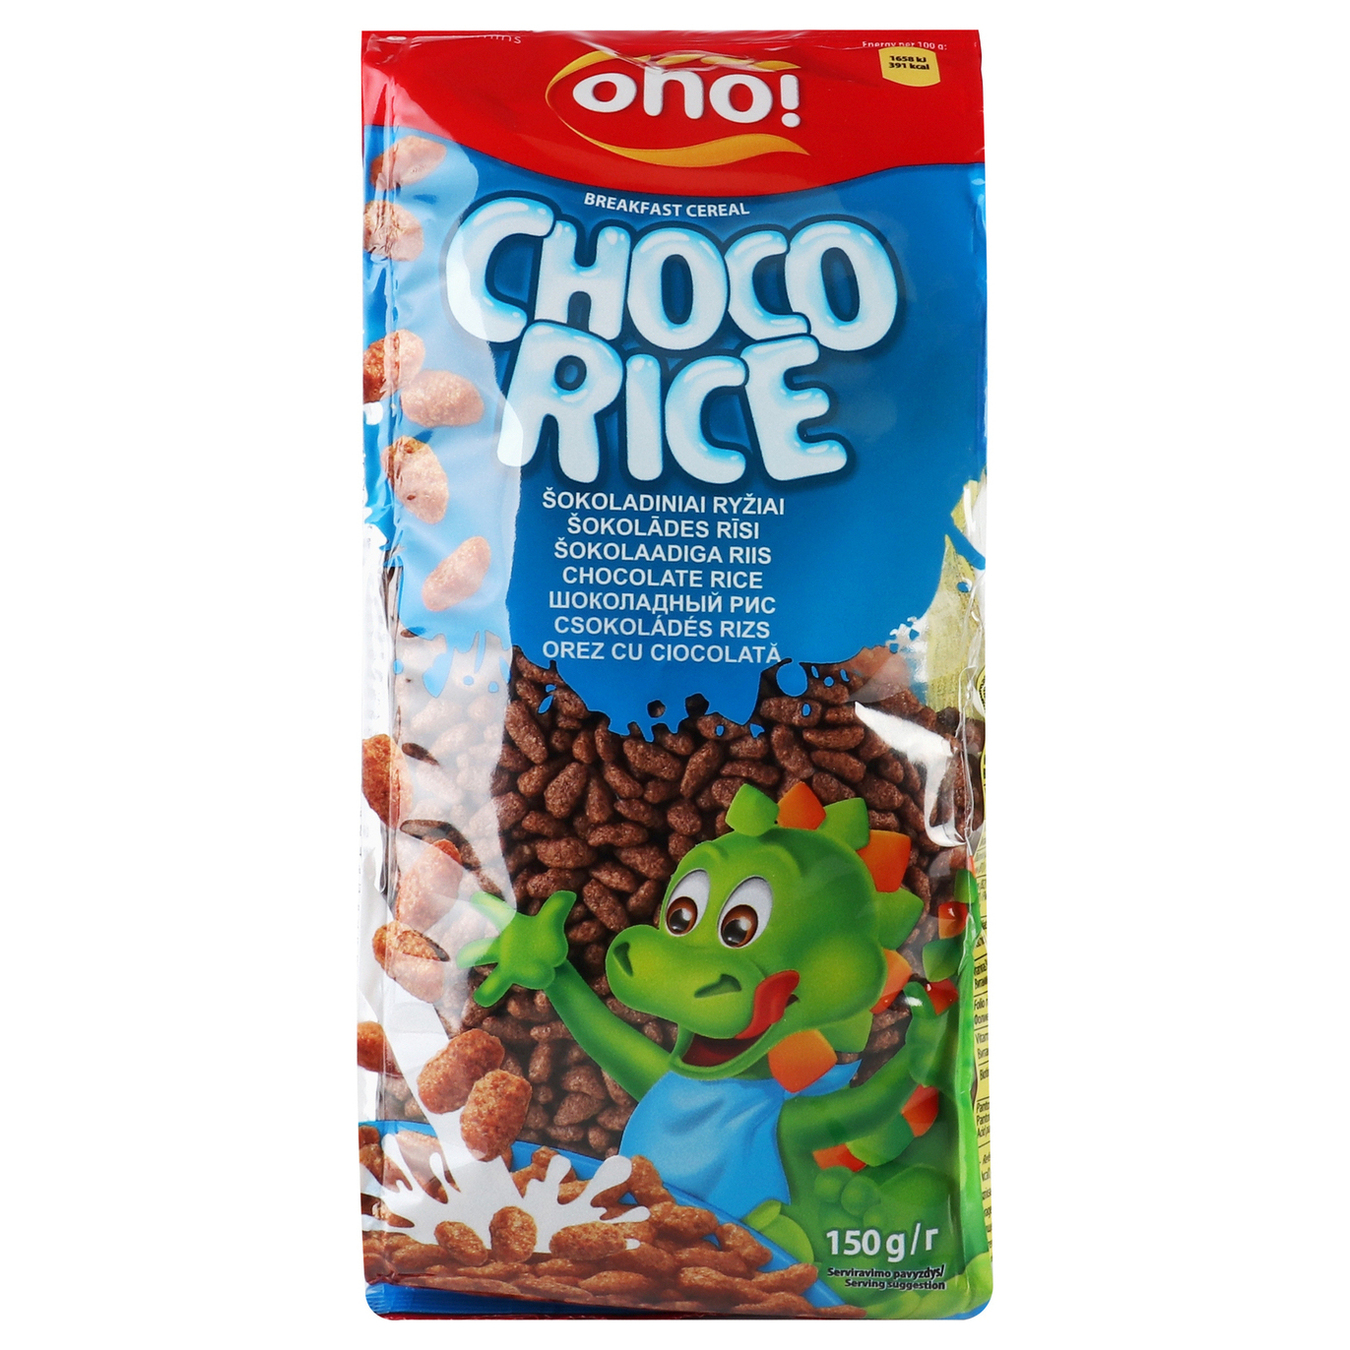 Oho Chocolate rice Dry Breakfast 150g